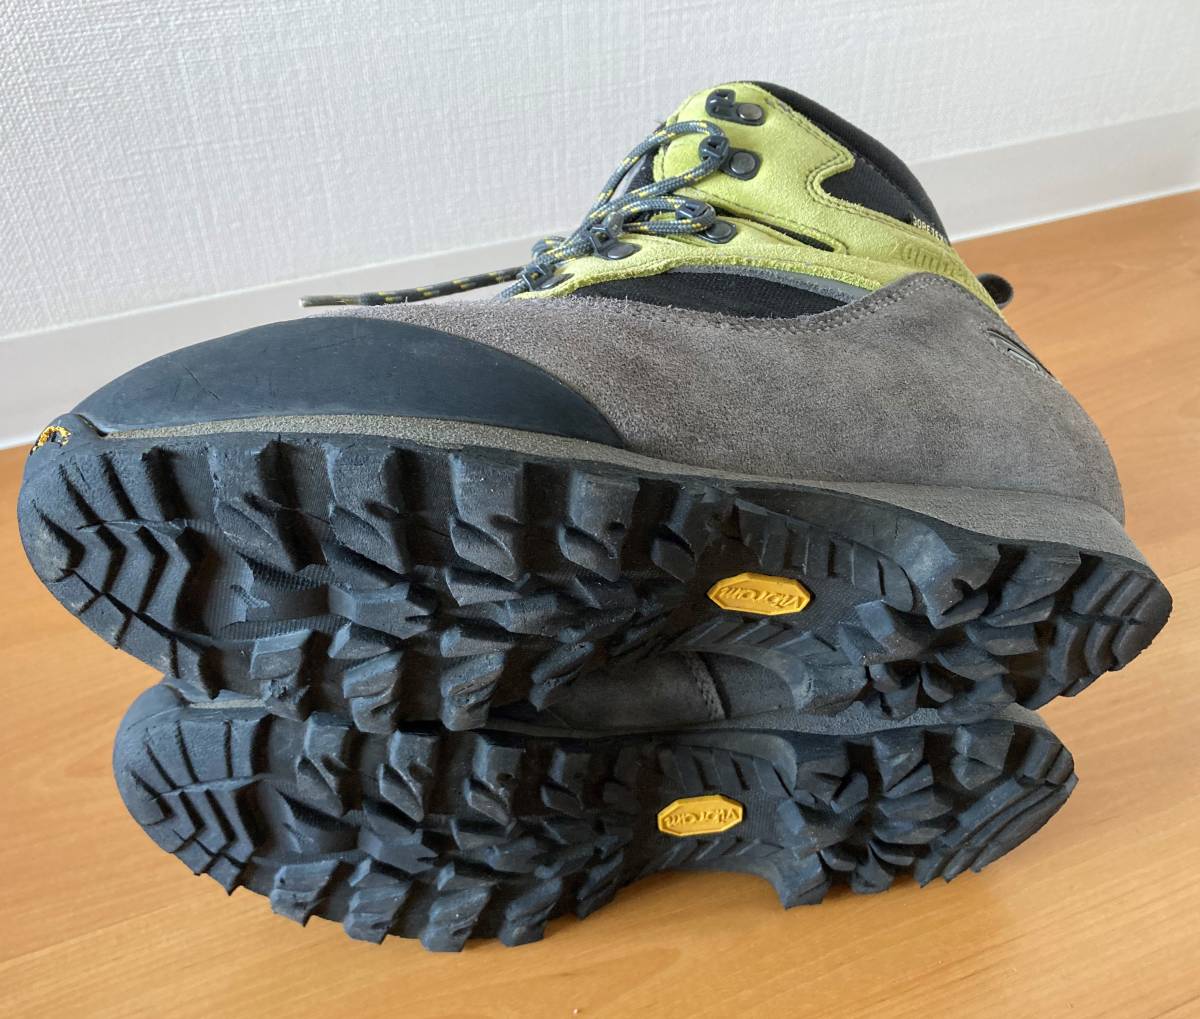 ザンバラン Zamberlan トレッキングシューズ 登山靴 サイズ42(約26cm) GORE-TEX